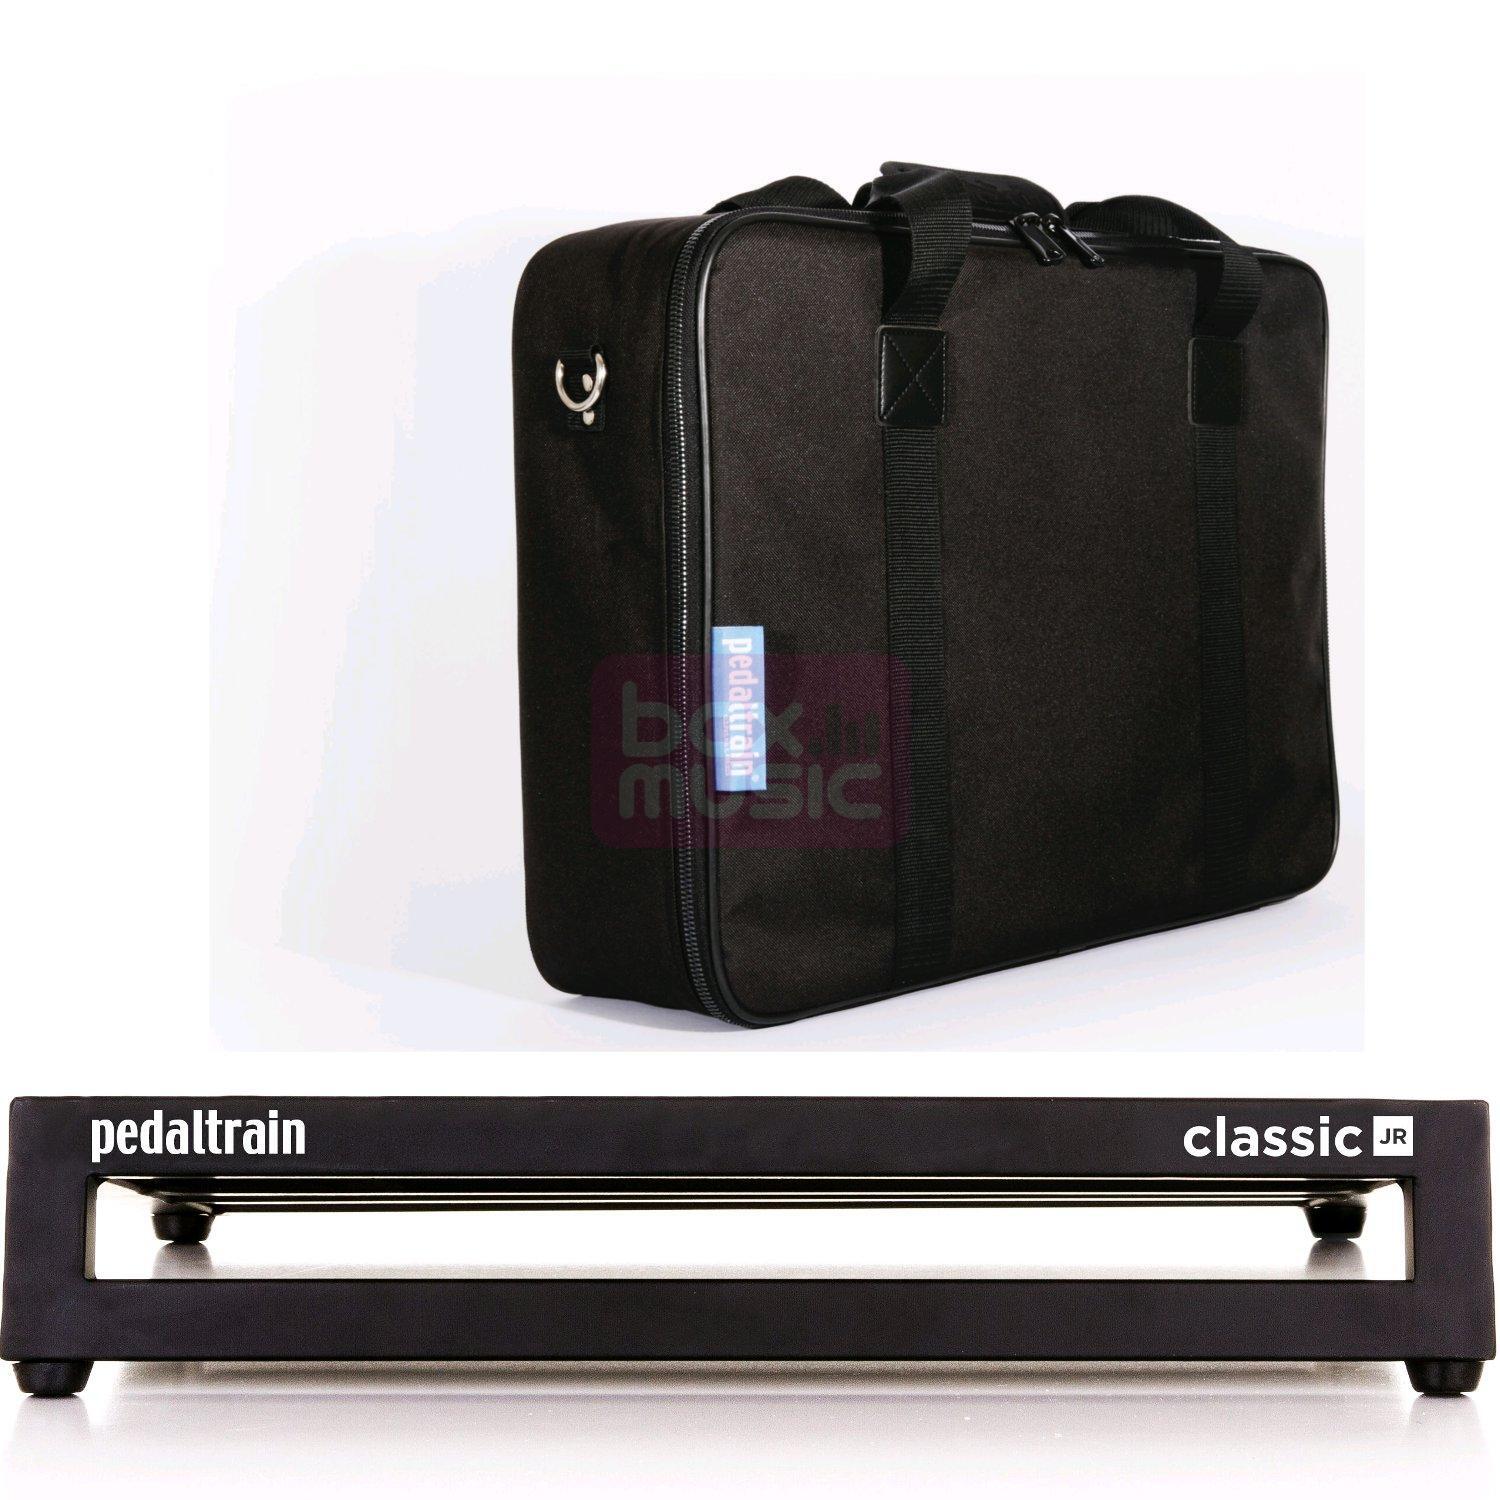 Pedaltrain classic JR soft case pedalboard